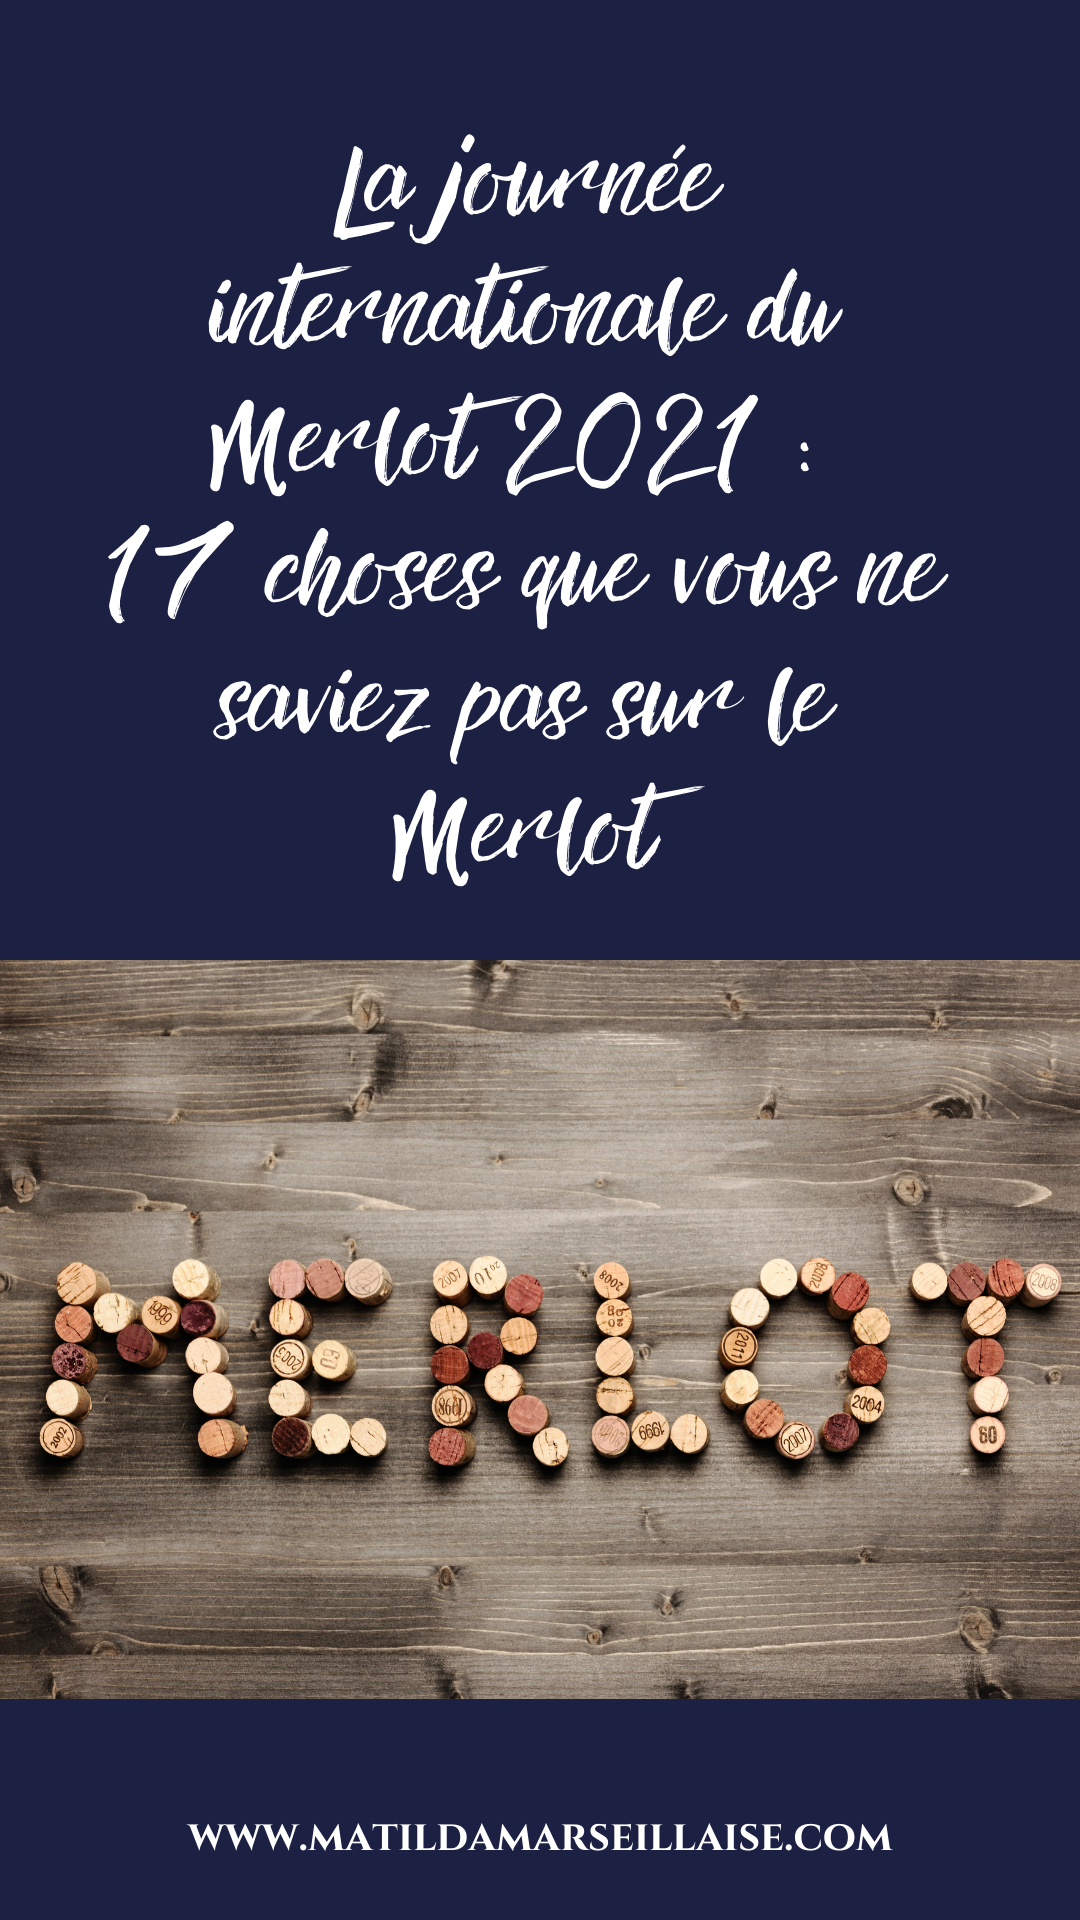 La journée internationale du Merlot 2021 : 17 choses que vous ne saviez pas sur le Merlot